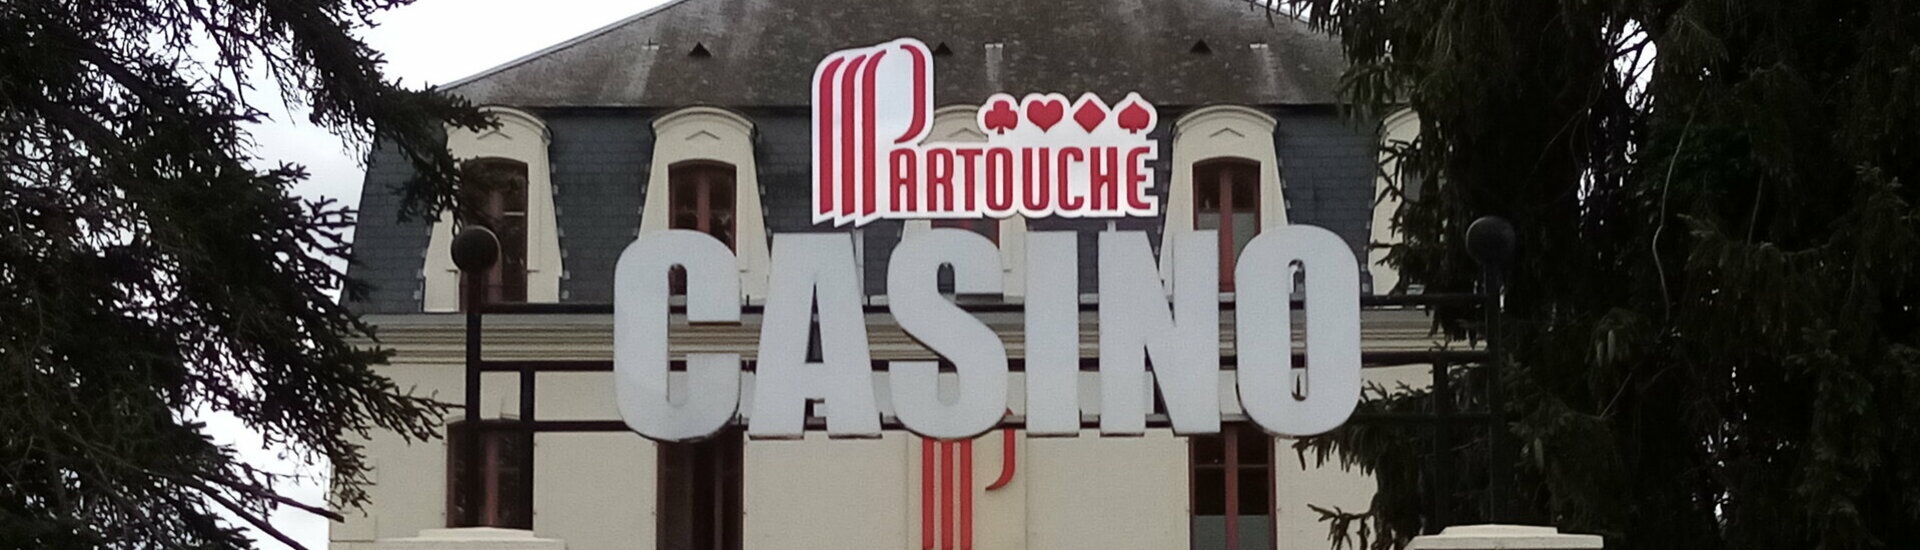 Le Casino Partouche